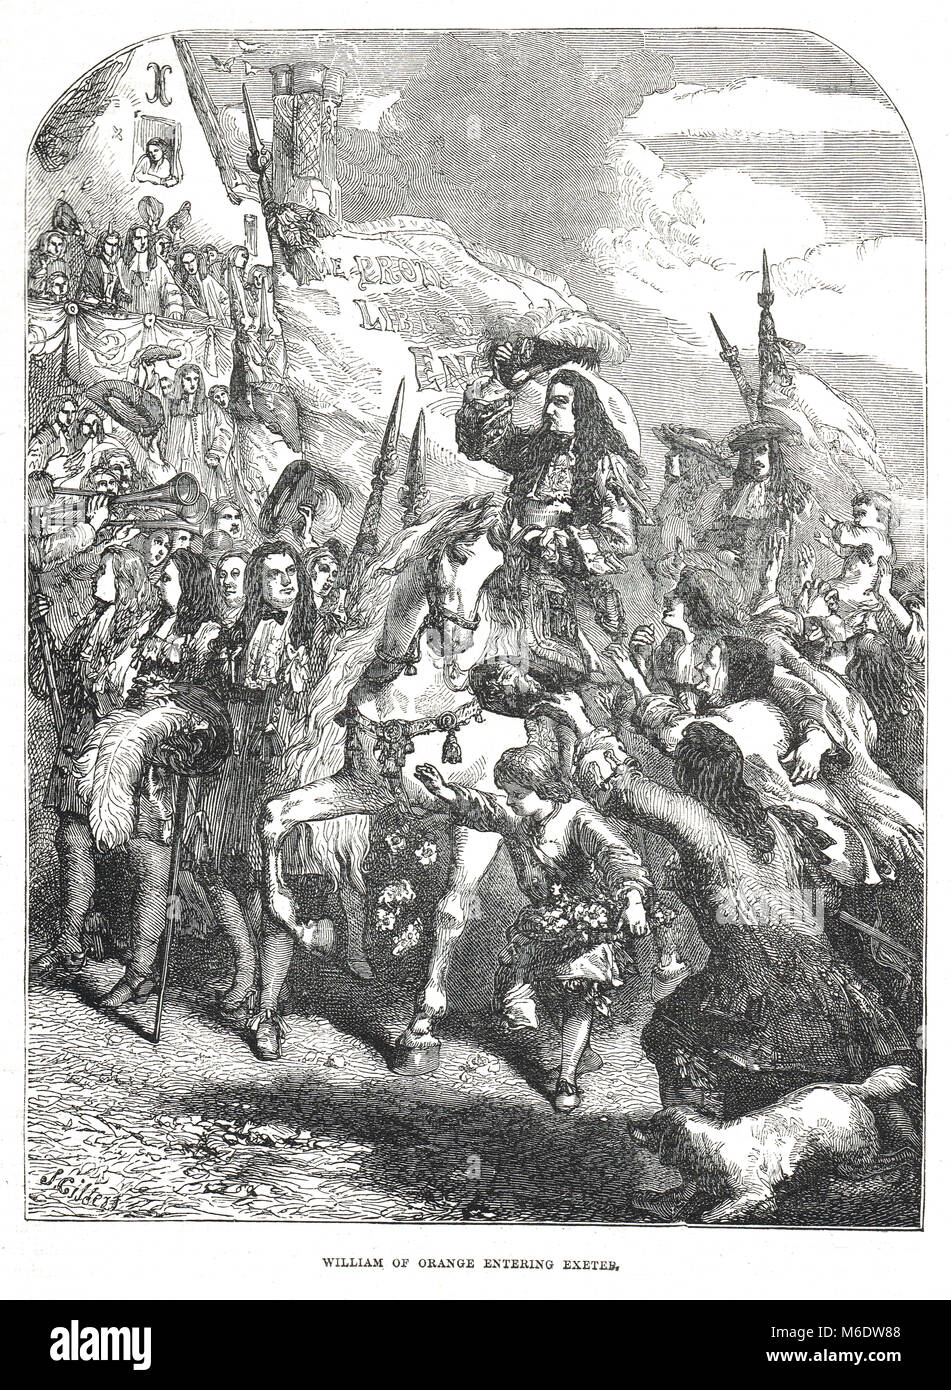 Guillermo de Orange, entrando en Exeter, la Gloriosa Revolución, la invasión de Inglaterra en 1688 Foto de stock